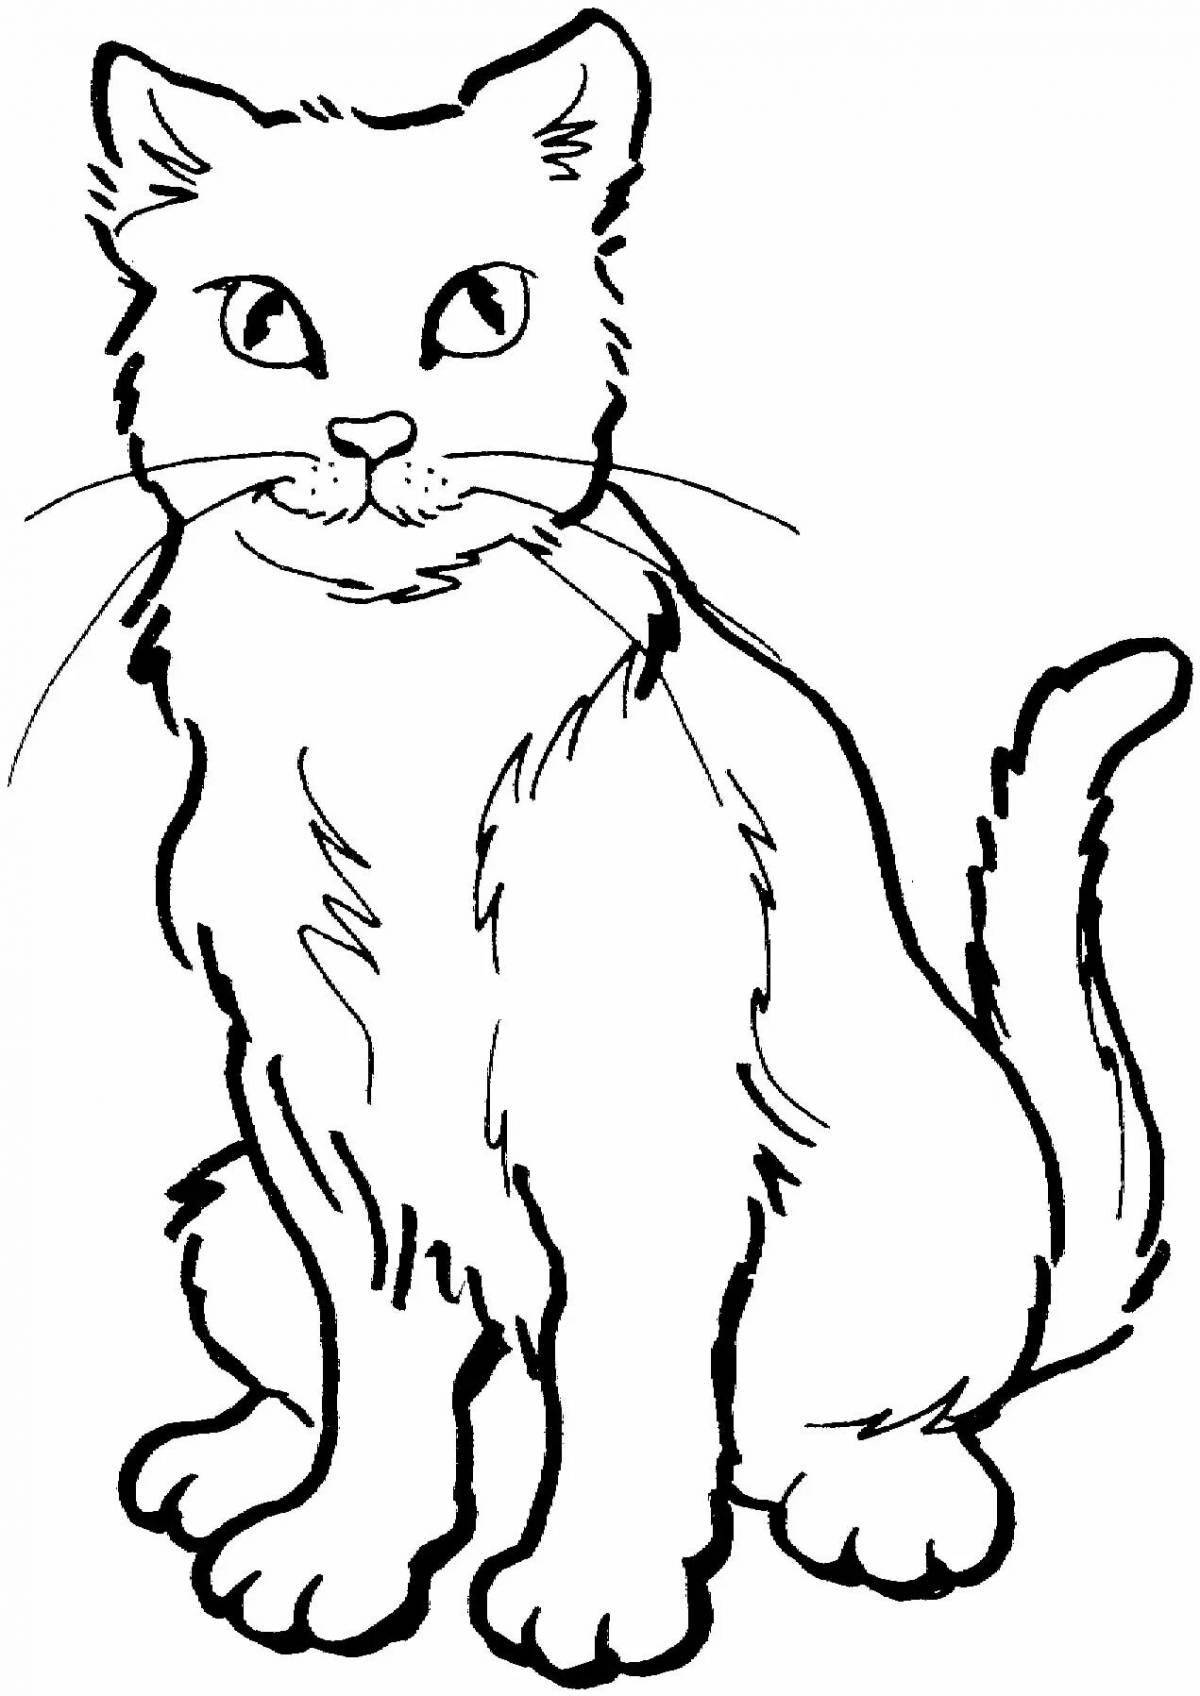 Элегантная раскраска рисунок кошки